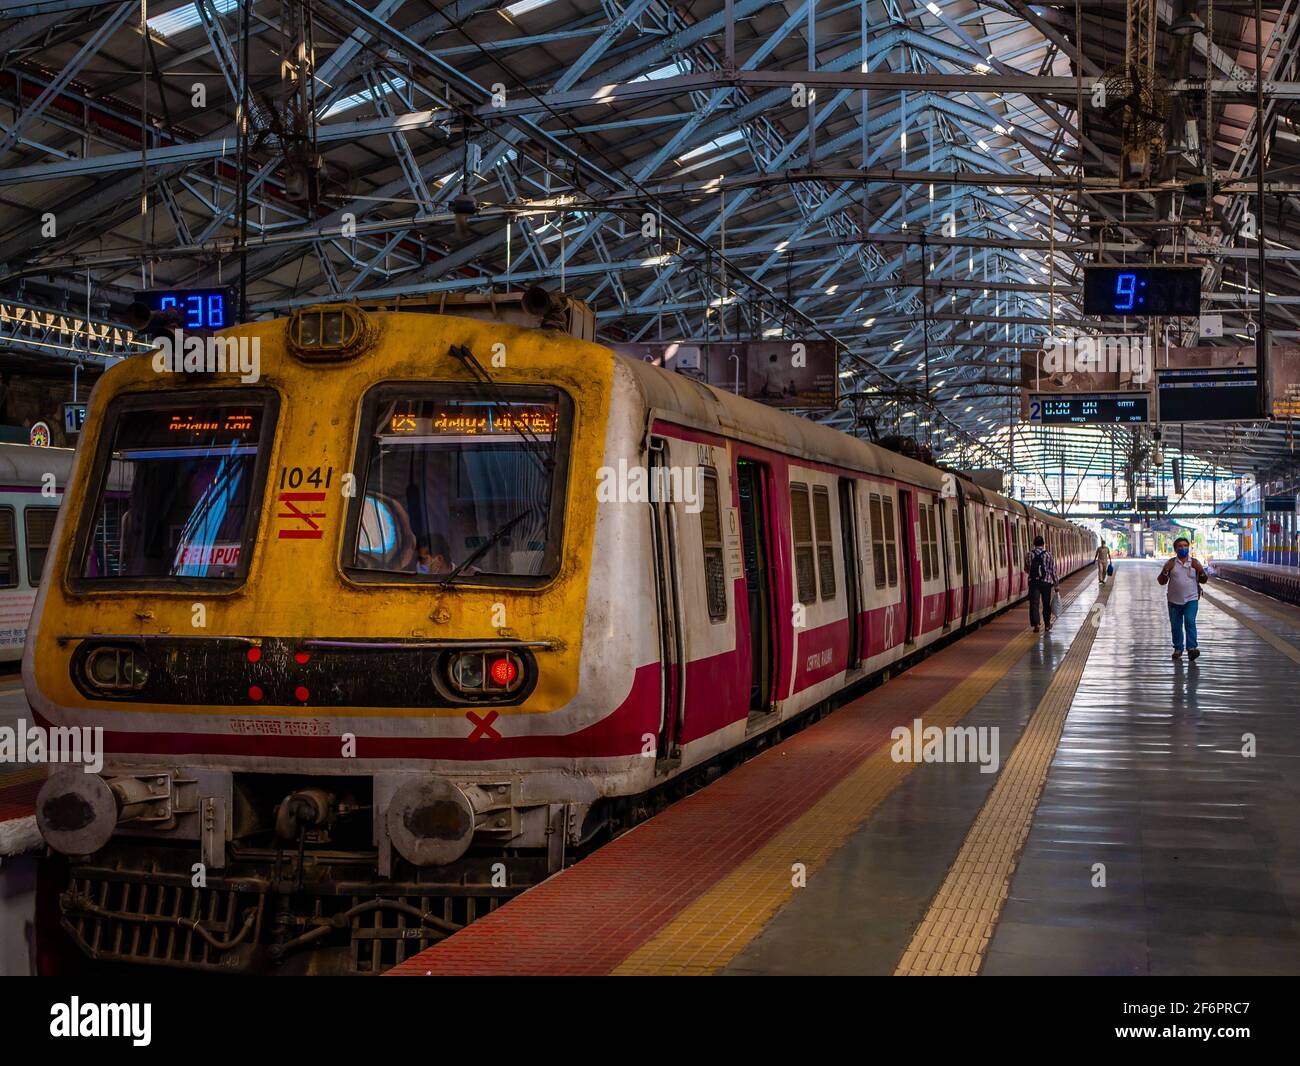 Mumbai, Inde - 7 janvier 2021 : plate-forme vide de la gare CST à l'architecture victorienne, CST est l'une des gares les plus fréquentées pour la classe ouvrière Banque D'Images